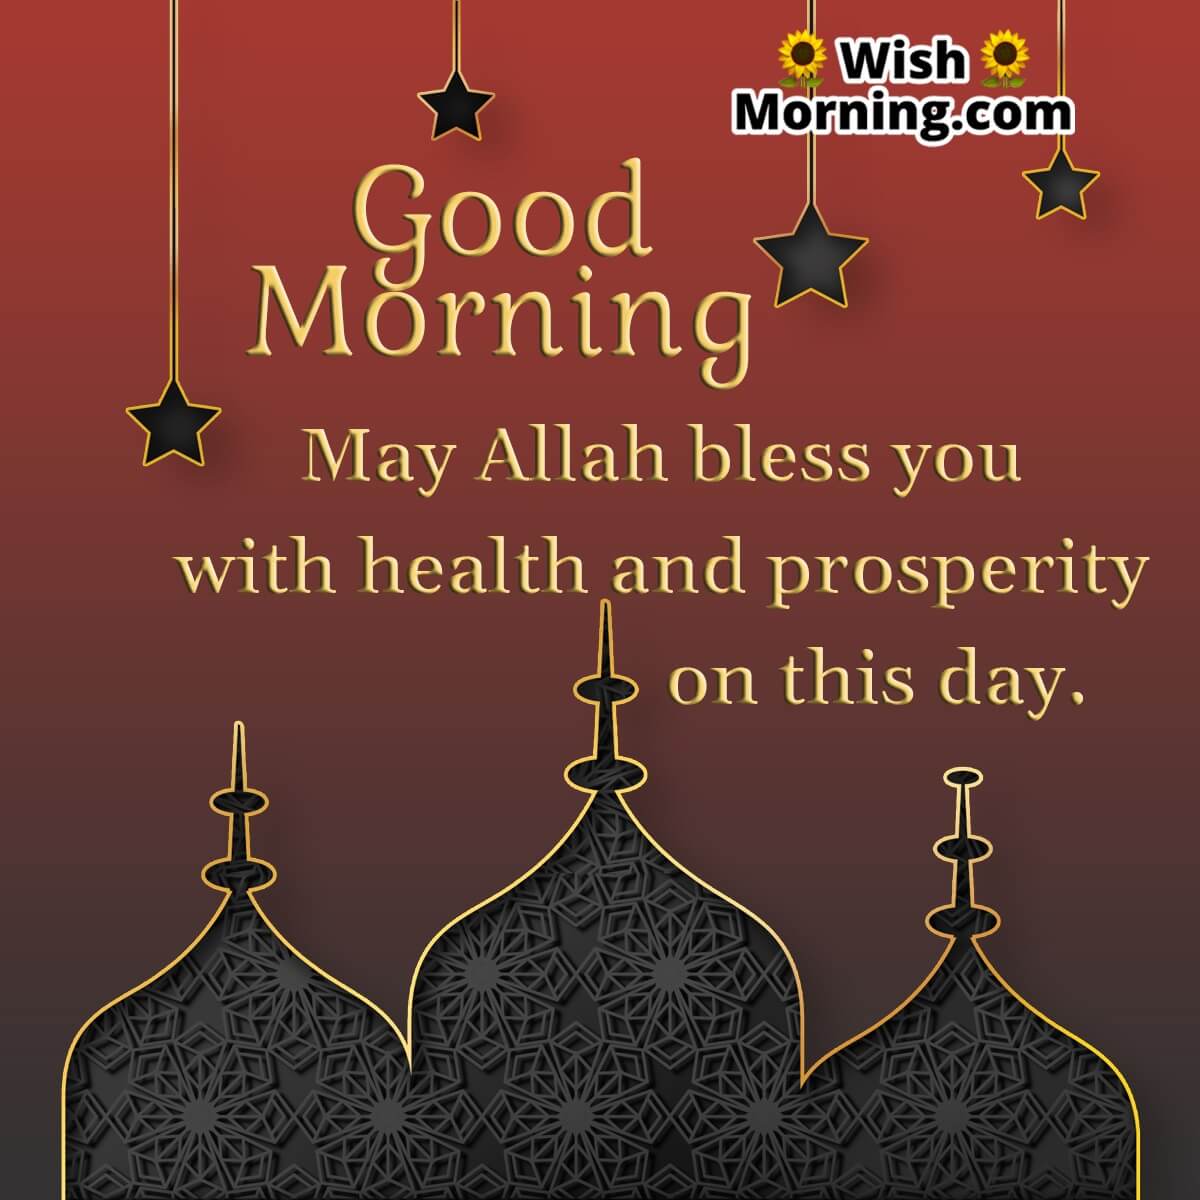 Good Morning May Allah Bless You